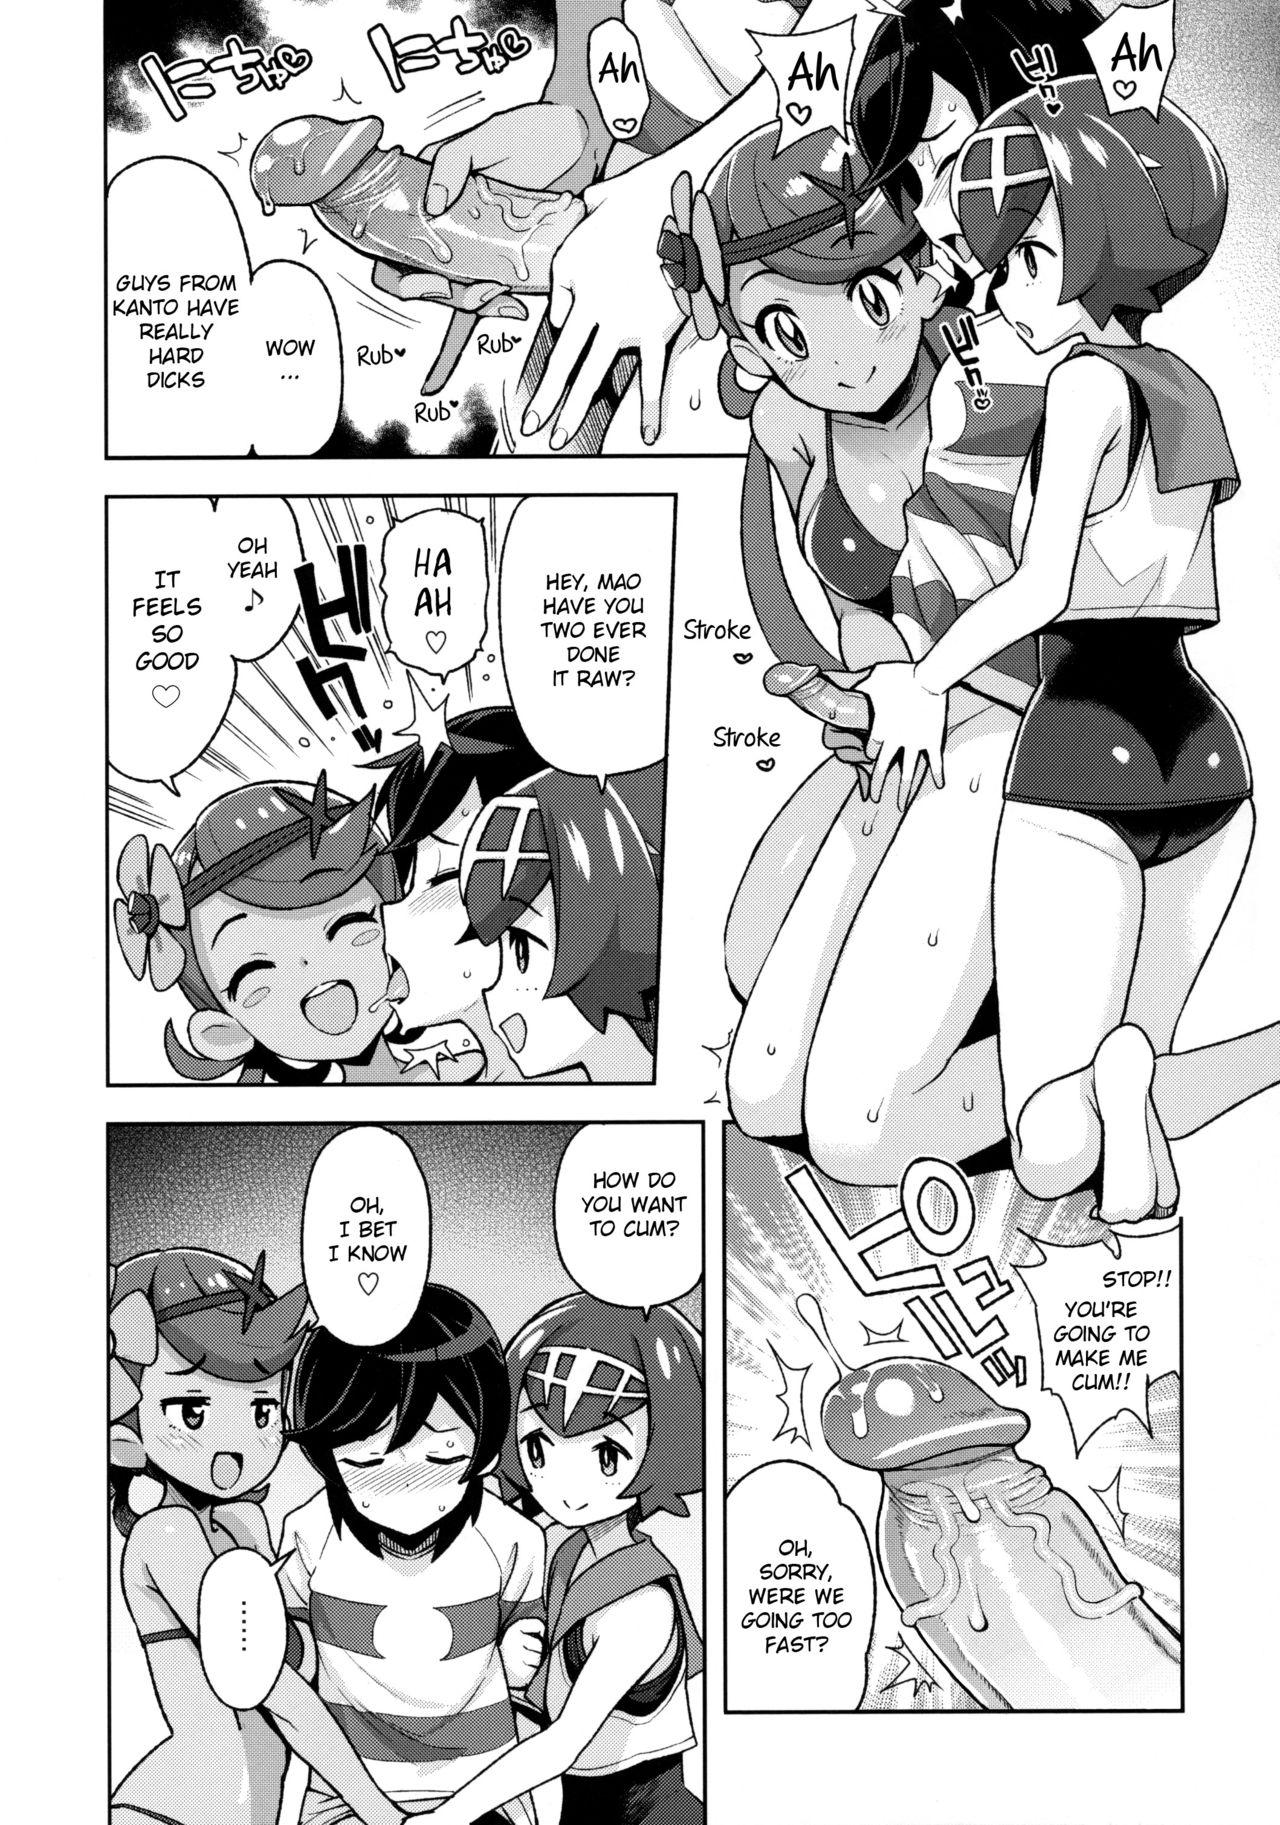 Hard Fucking MAO FRIENDS2 - Pokemon | pocket monsters Ex Girlfriend - Page 6